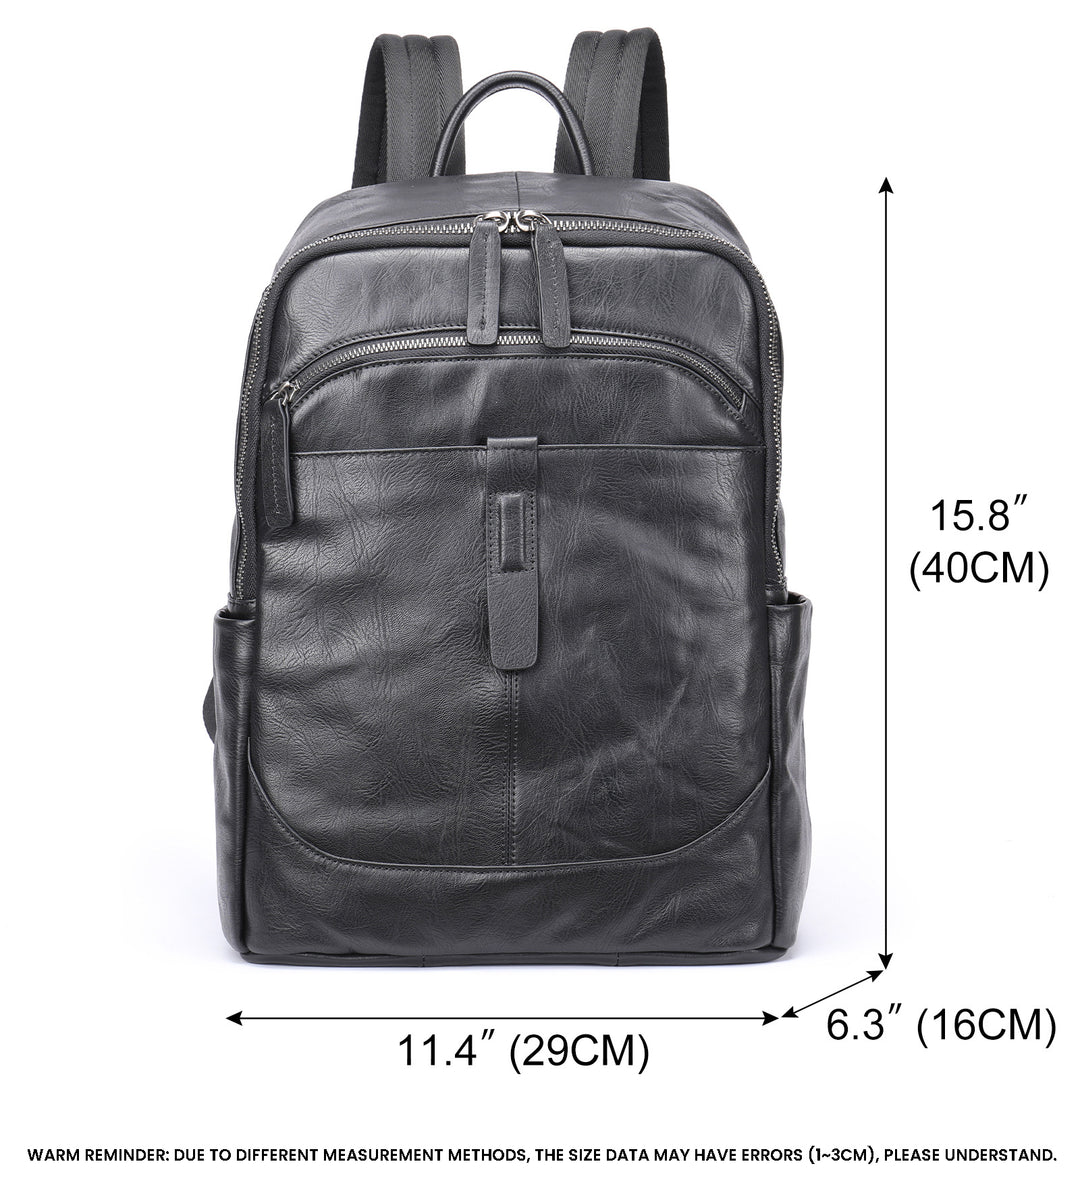 The Wisp™ NexGen Backpack